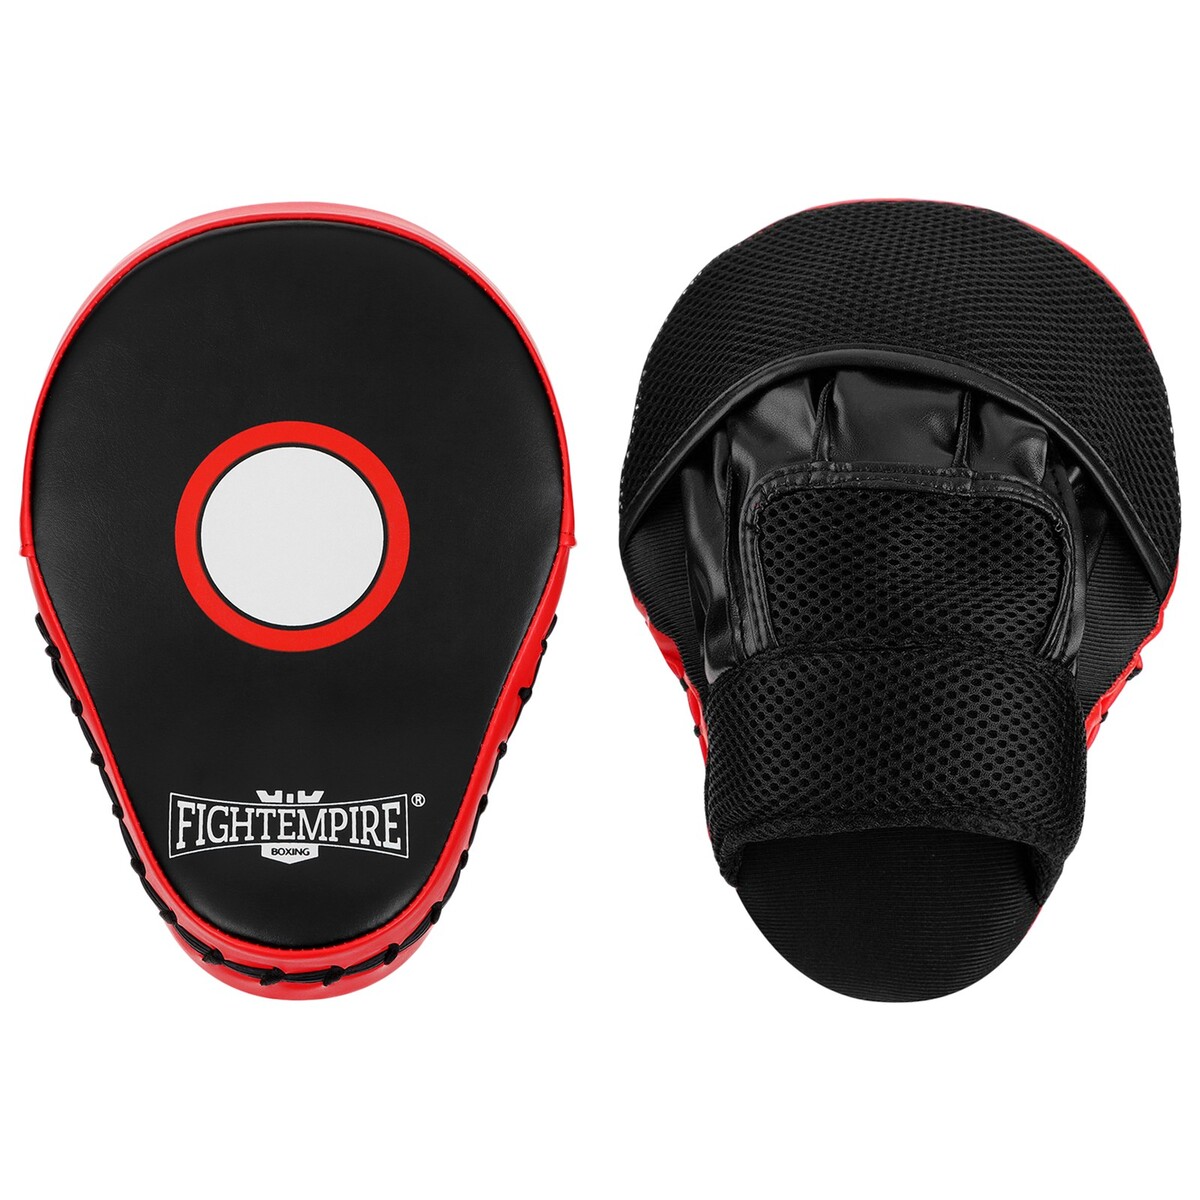 Лапа боксерская fight empire, 1 шт., цвет черный/красный украшение на зеркало боксерская перчатка 9×5 см